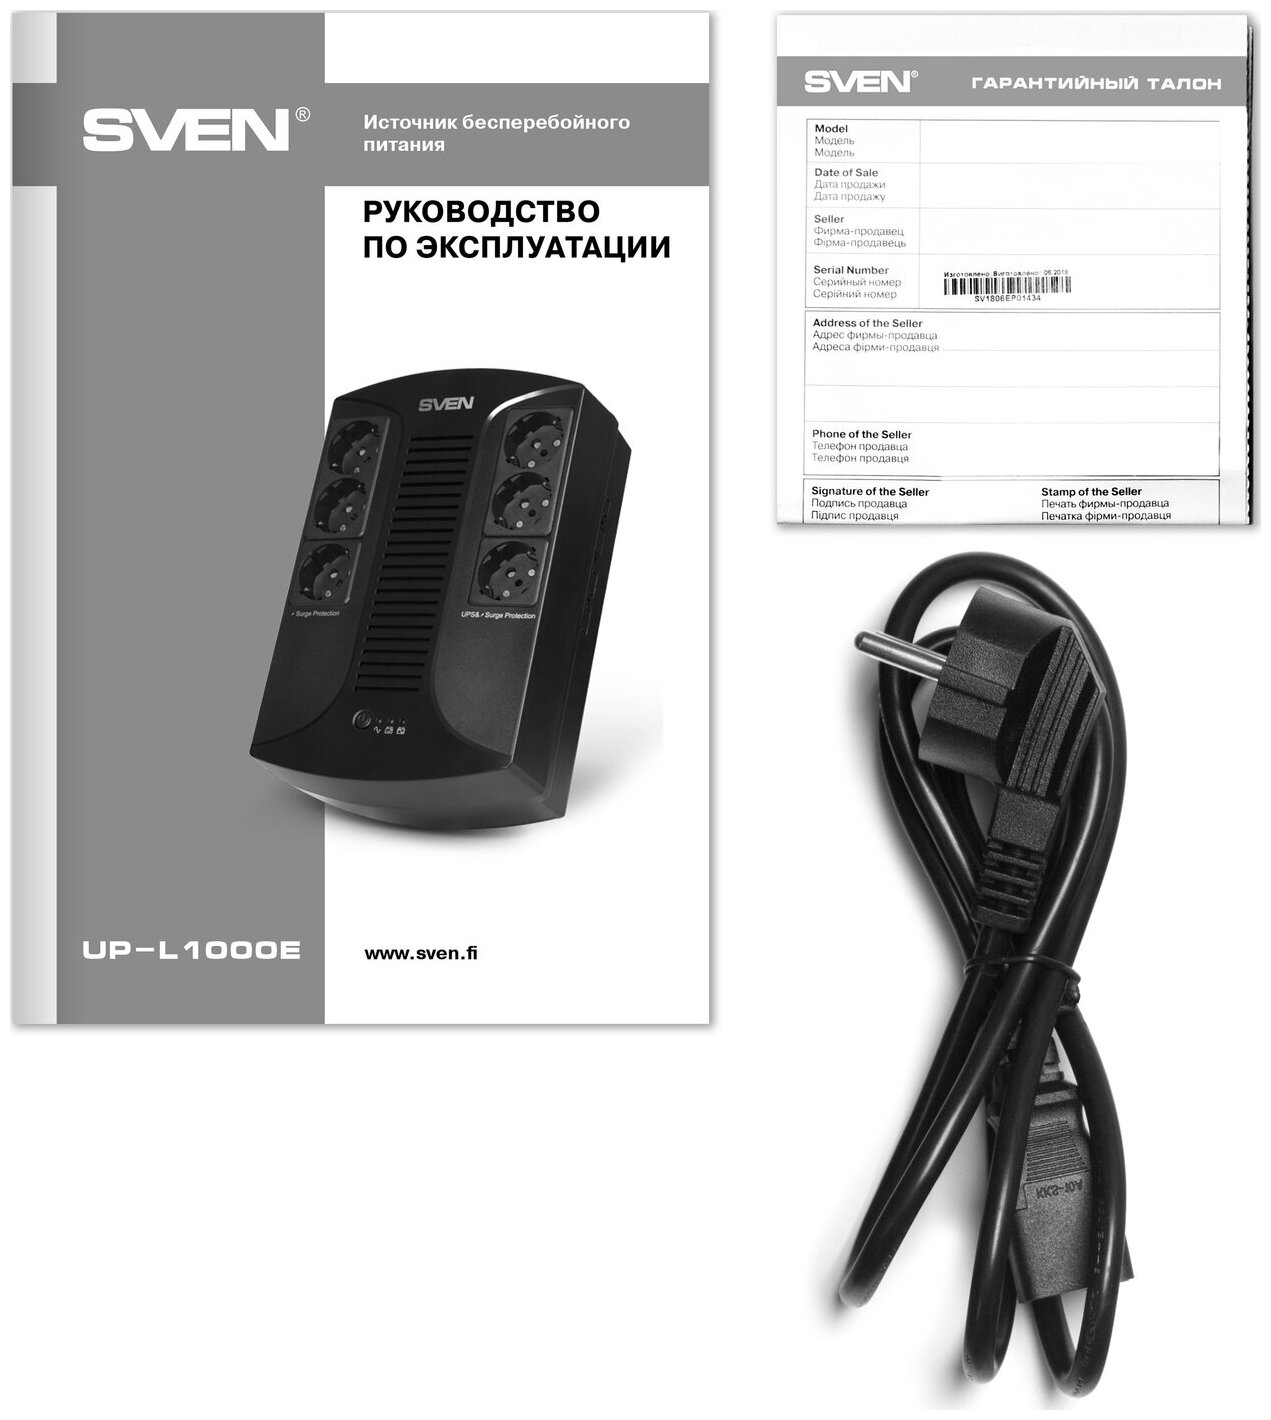 Источник бесперебойного питания Sven UP-L1000E line-interactive, AVR, 1000VA/510W